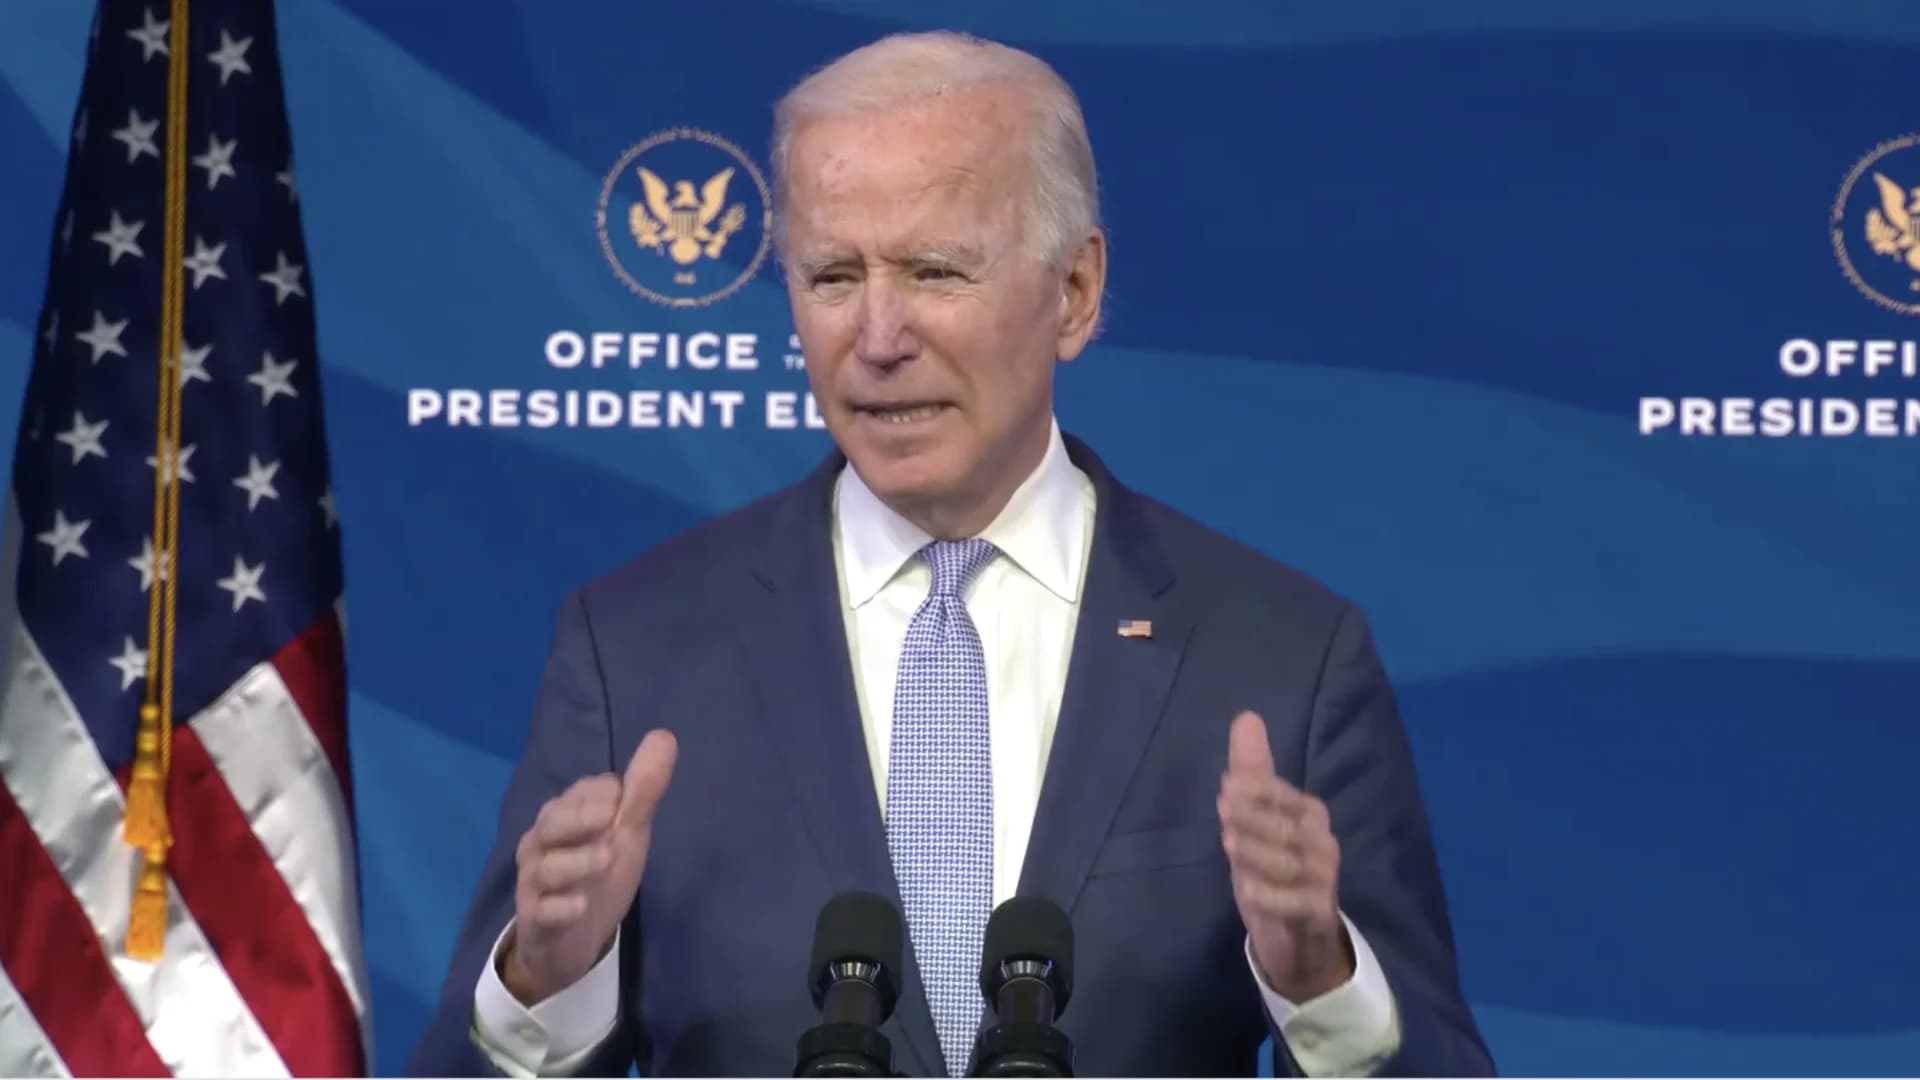 Biden calls on mob to 'pull back,' urges restoring decency